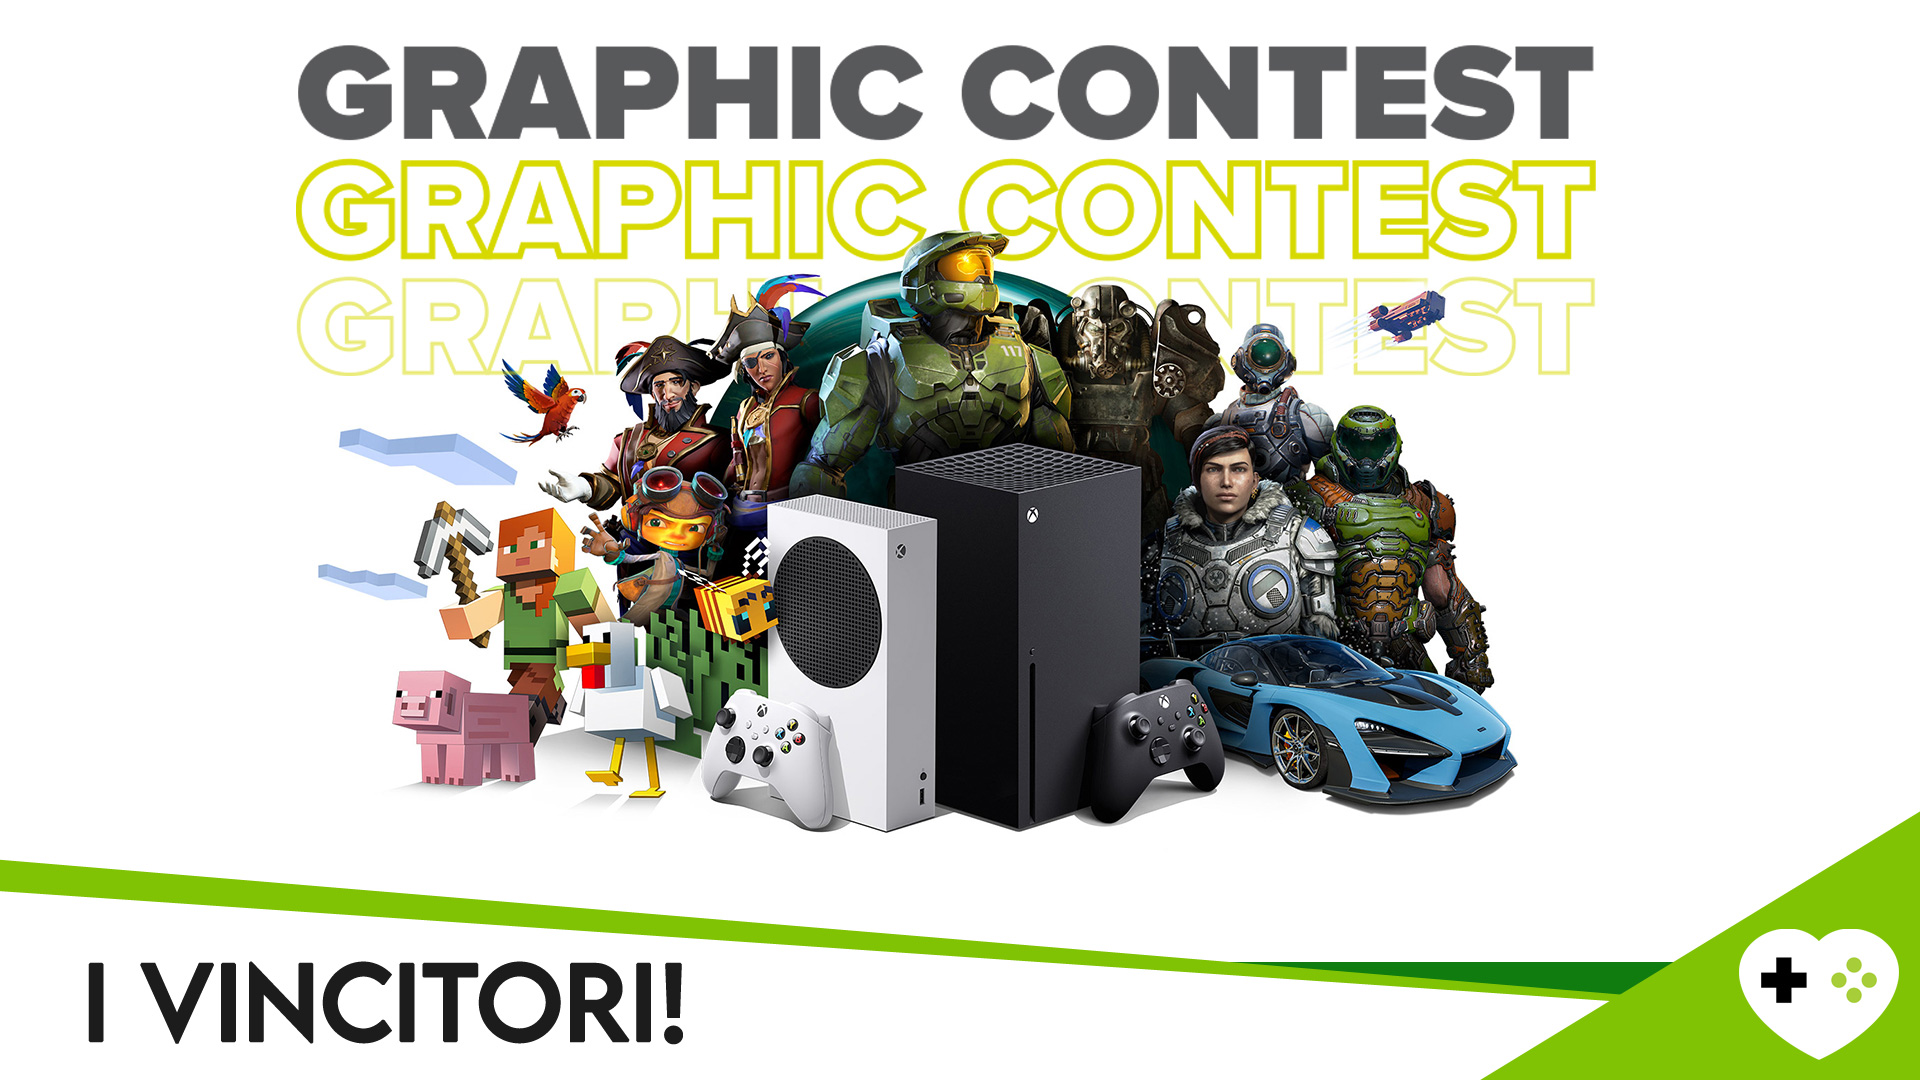 Xbox All Access Graphic Contest - I vincitori!